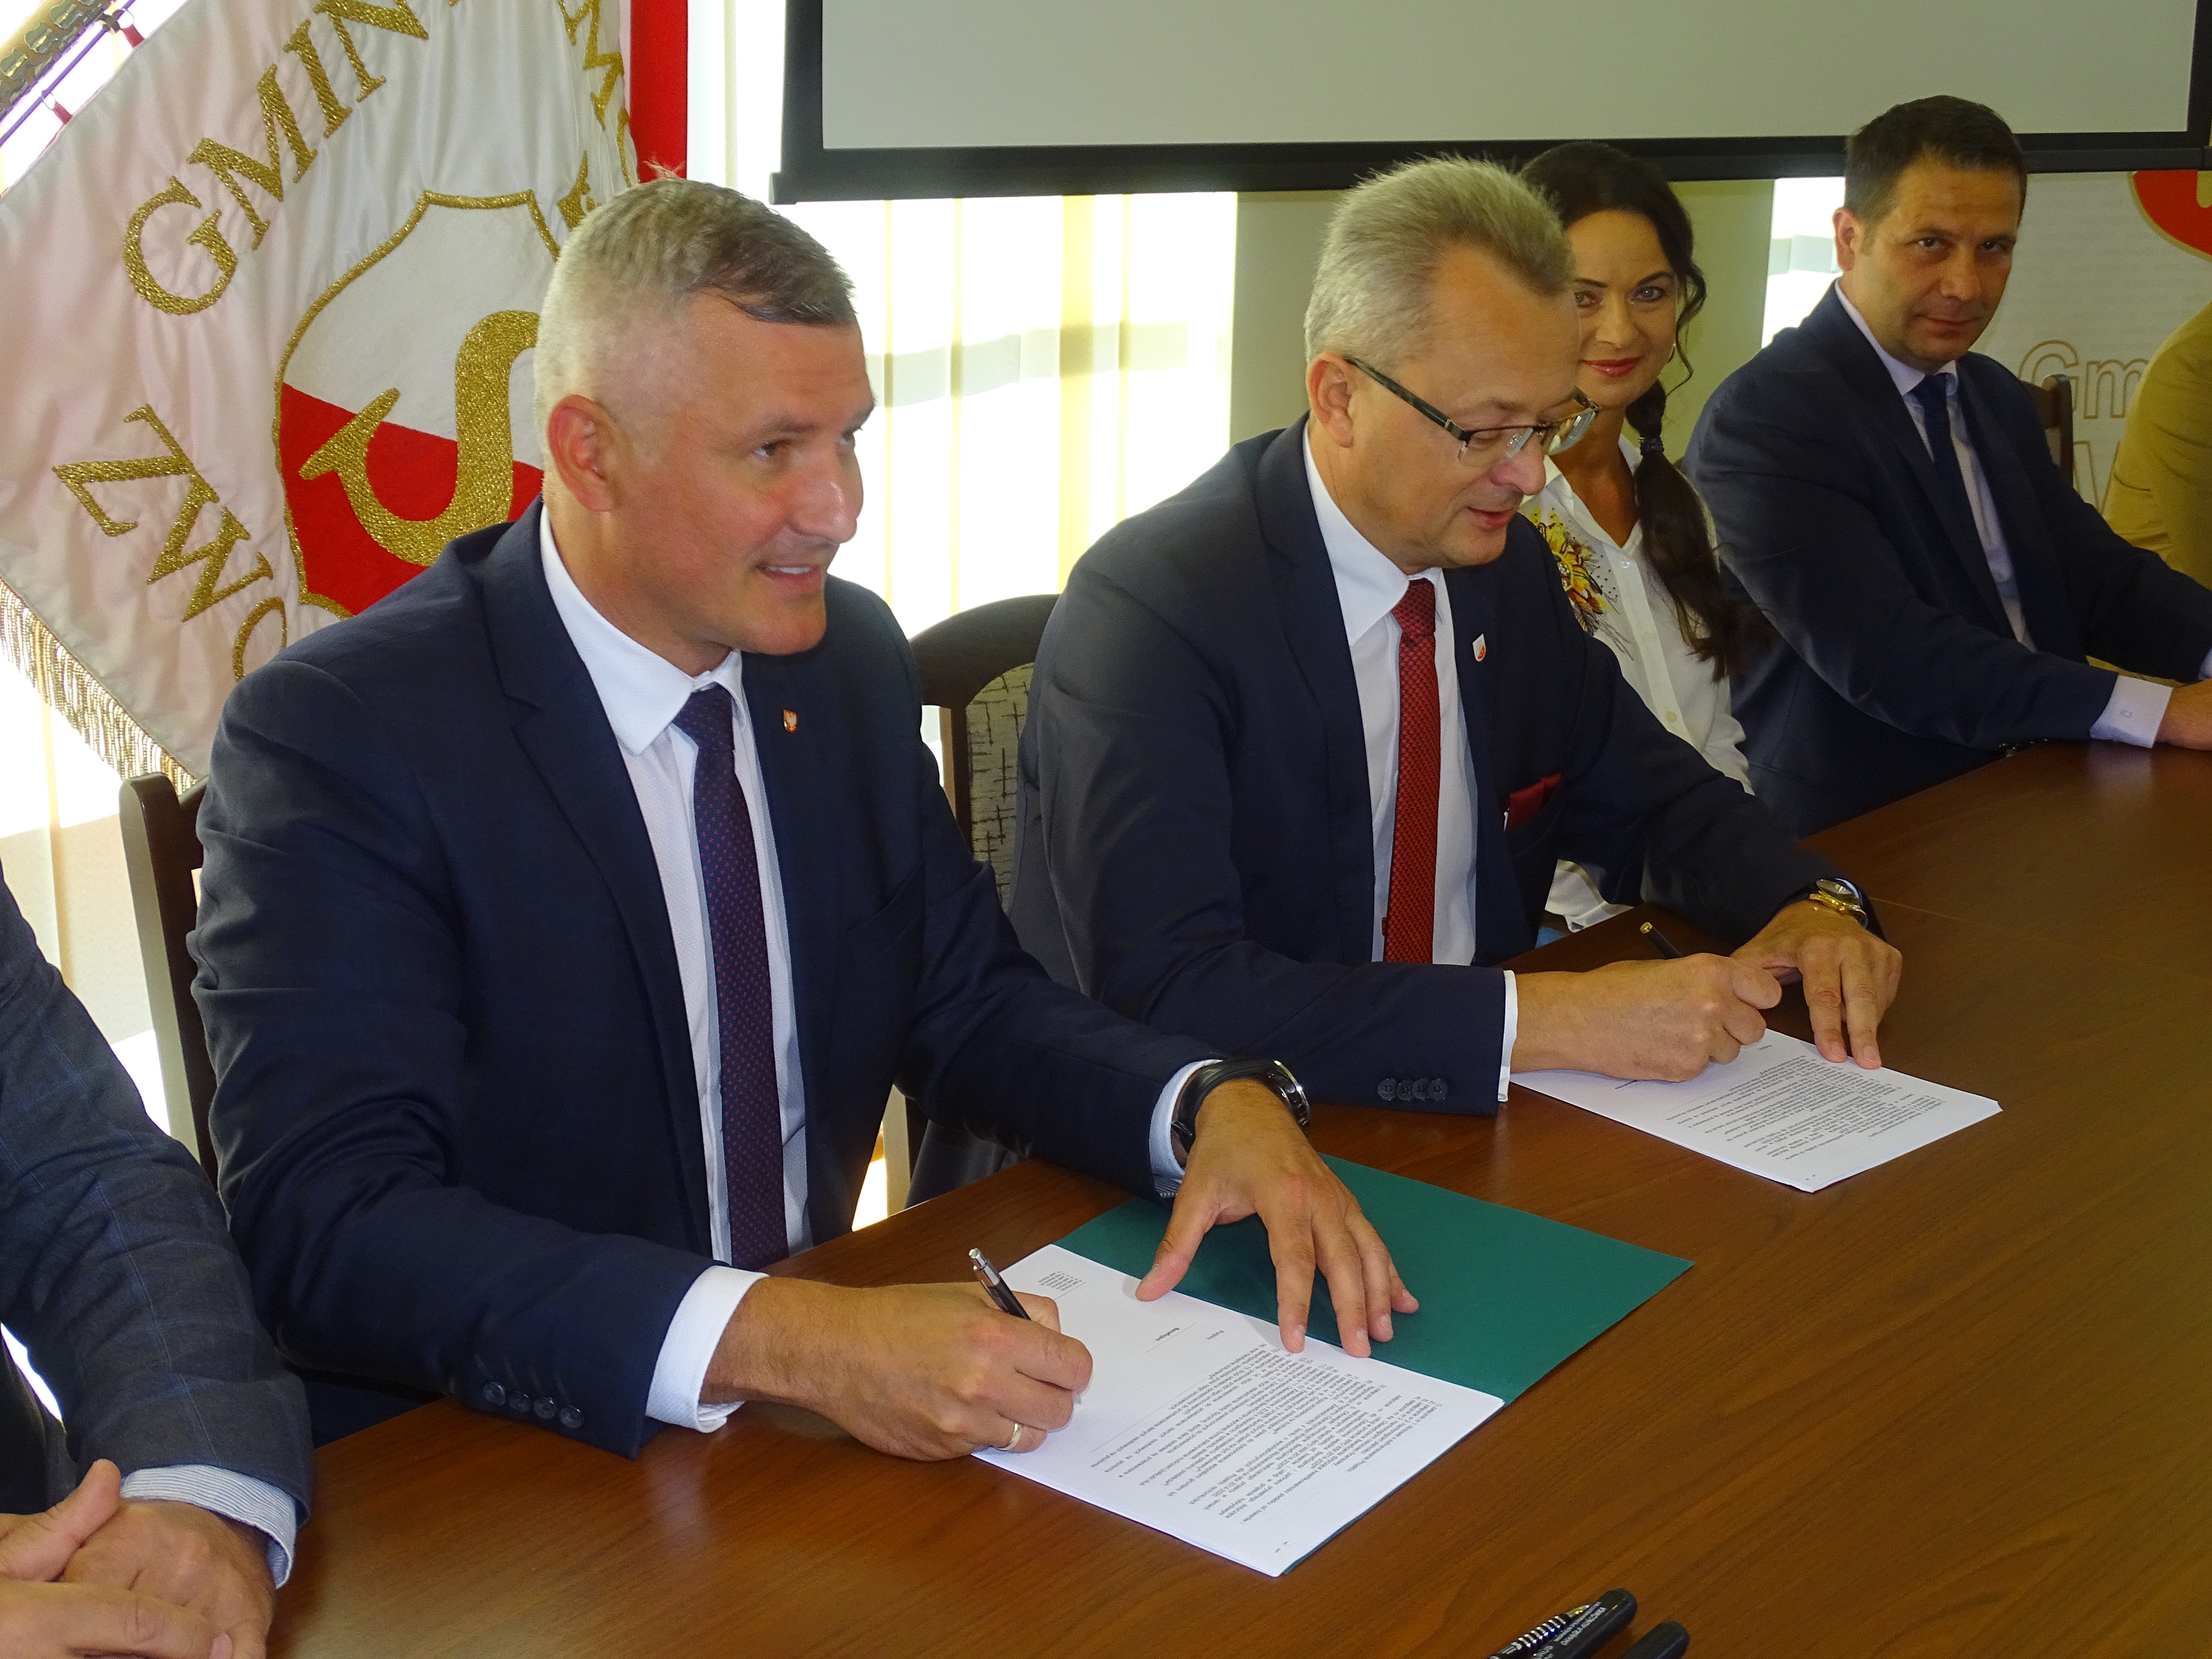 12 sierpnia w Urzędzie Miasta w Zwoleniu została podpisana w tej sprawie umowa, którą sygnowali: wicemarszałek województwa mazowieckiego Rafał Rajkowski oraz burmistrz Zwolenia Arkadiusz Sulima.